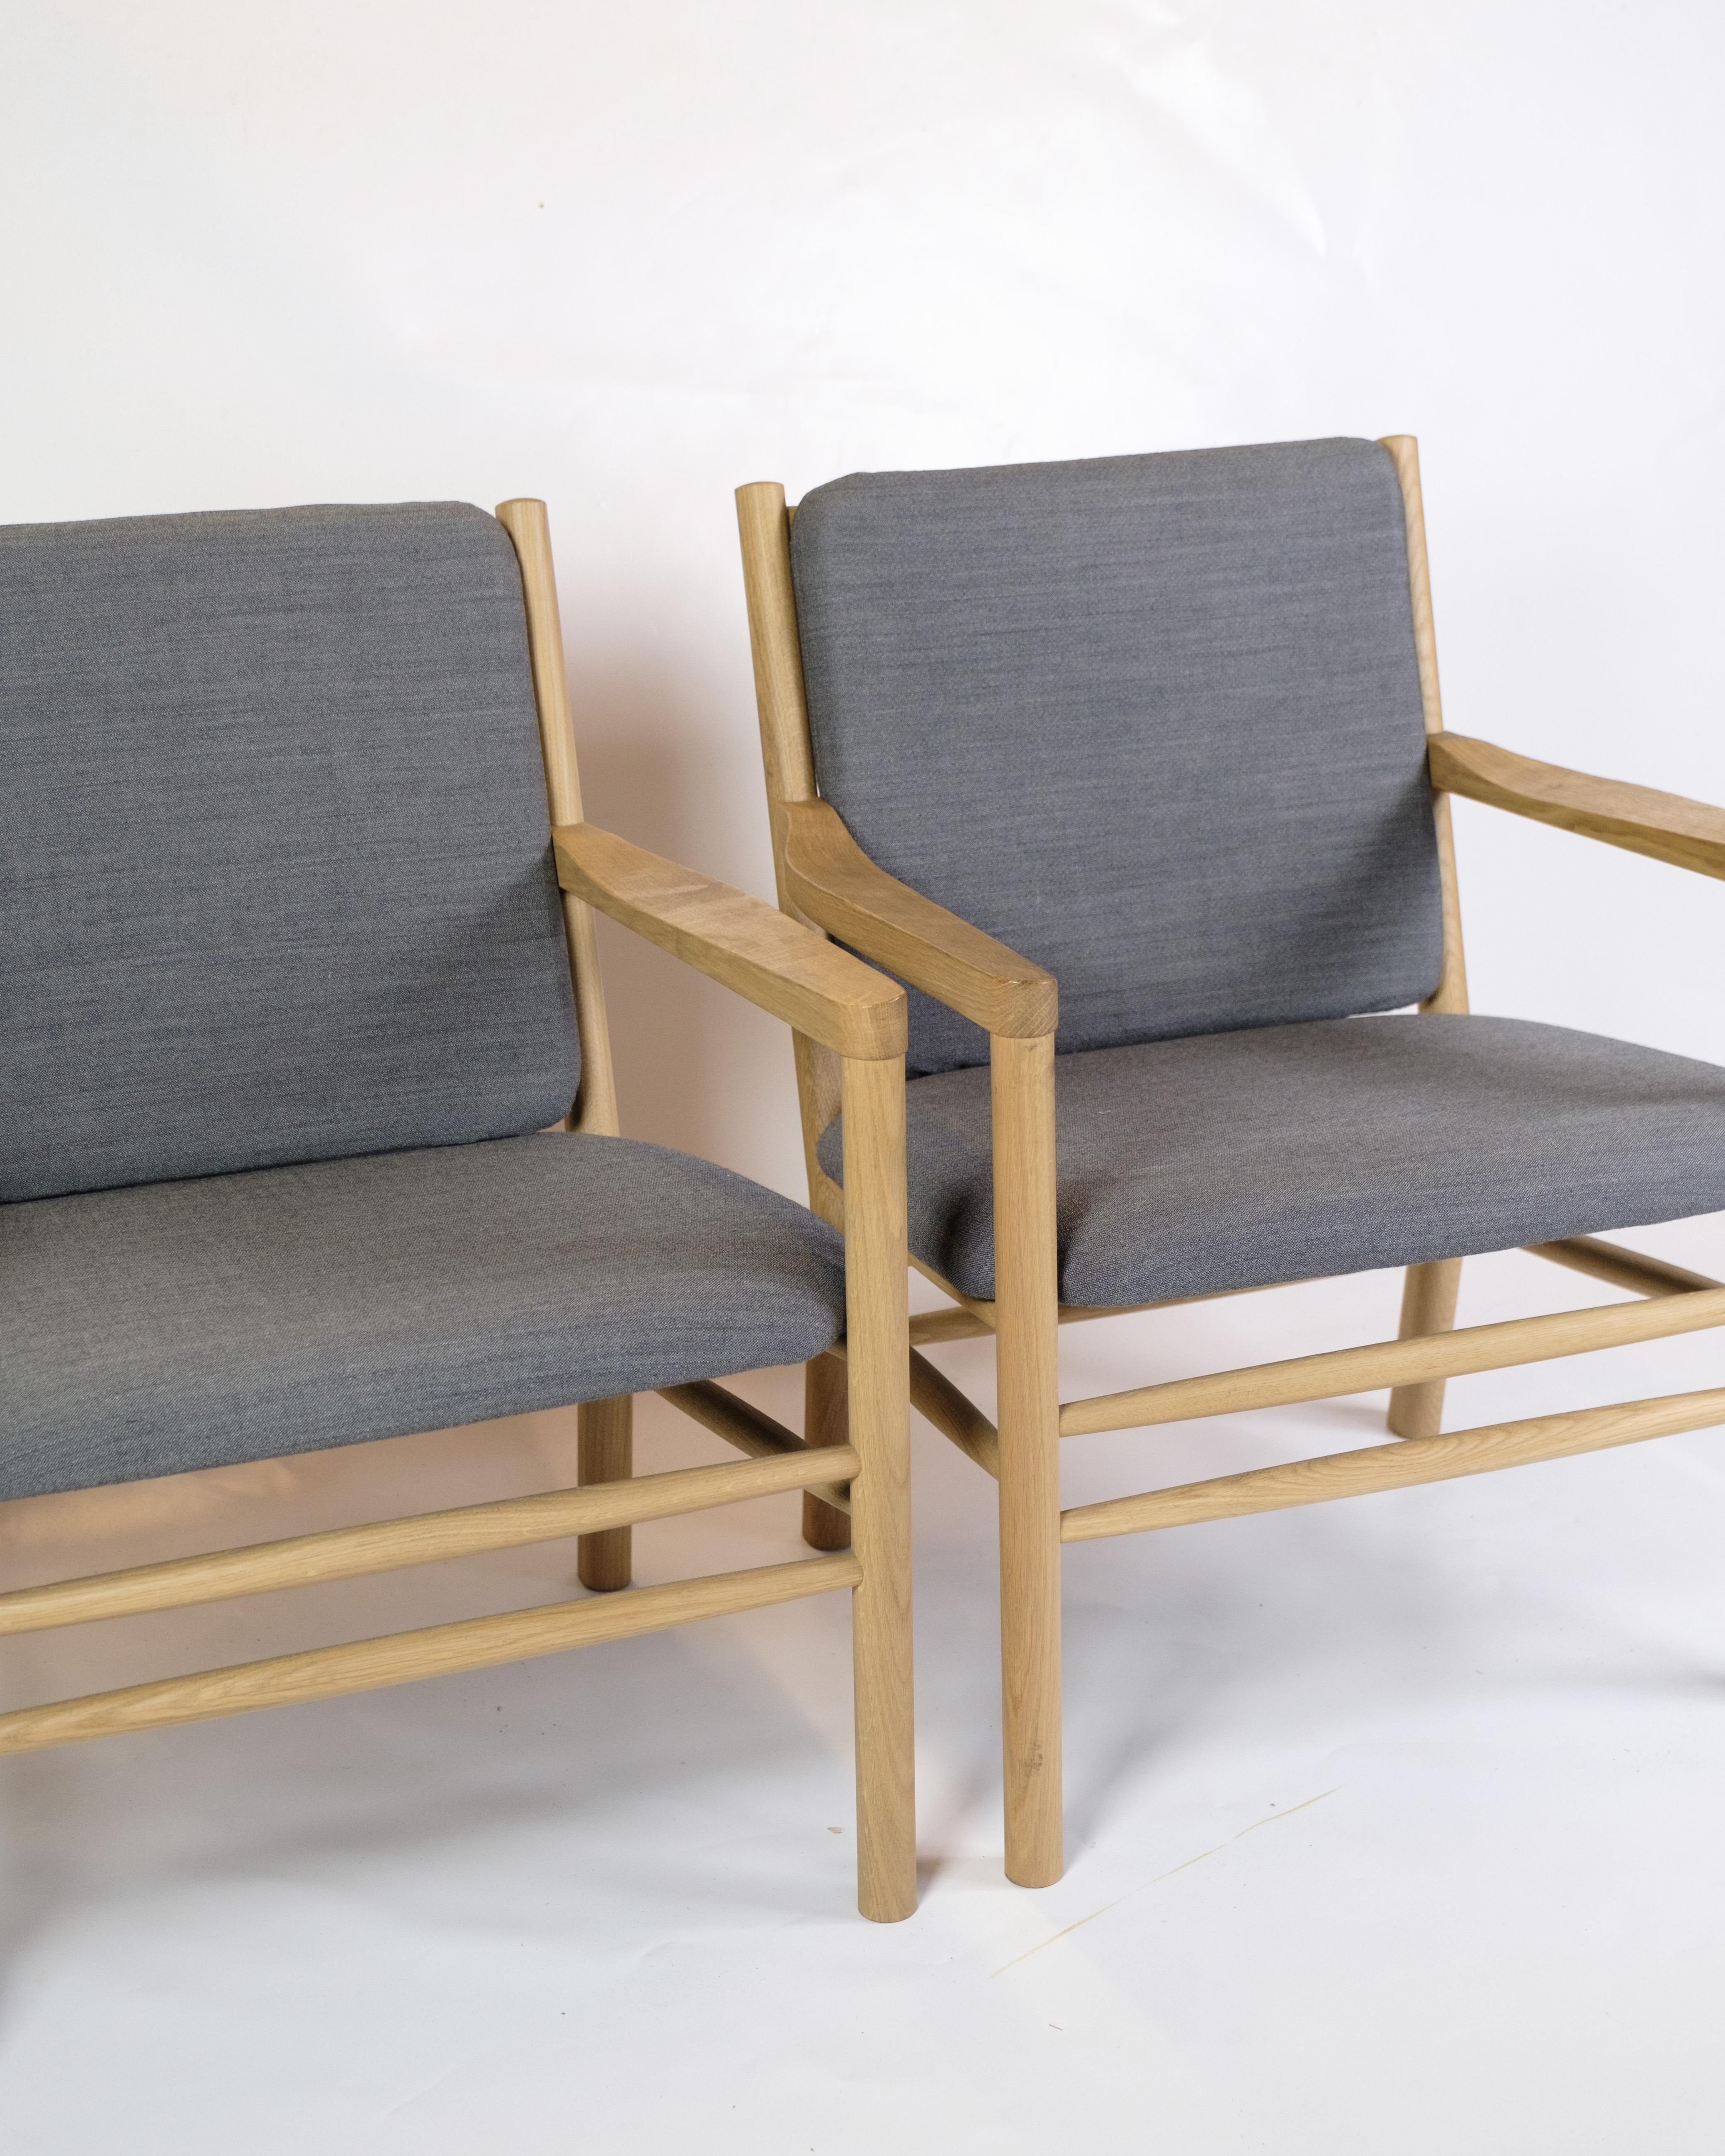 Cet ensemble de deux fauteuils, modèle J147, dégage une sublime combinaison de confort et d'élégance. Fabriqués en chêne massif et recouverts d'un élégant revêtement en laine grise, ces fauteuils offrent une expérience d'assise luxueuse.

Erik Ole